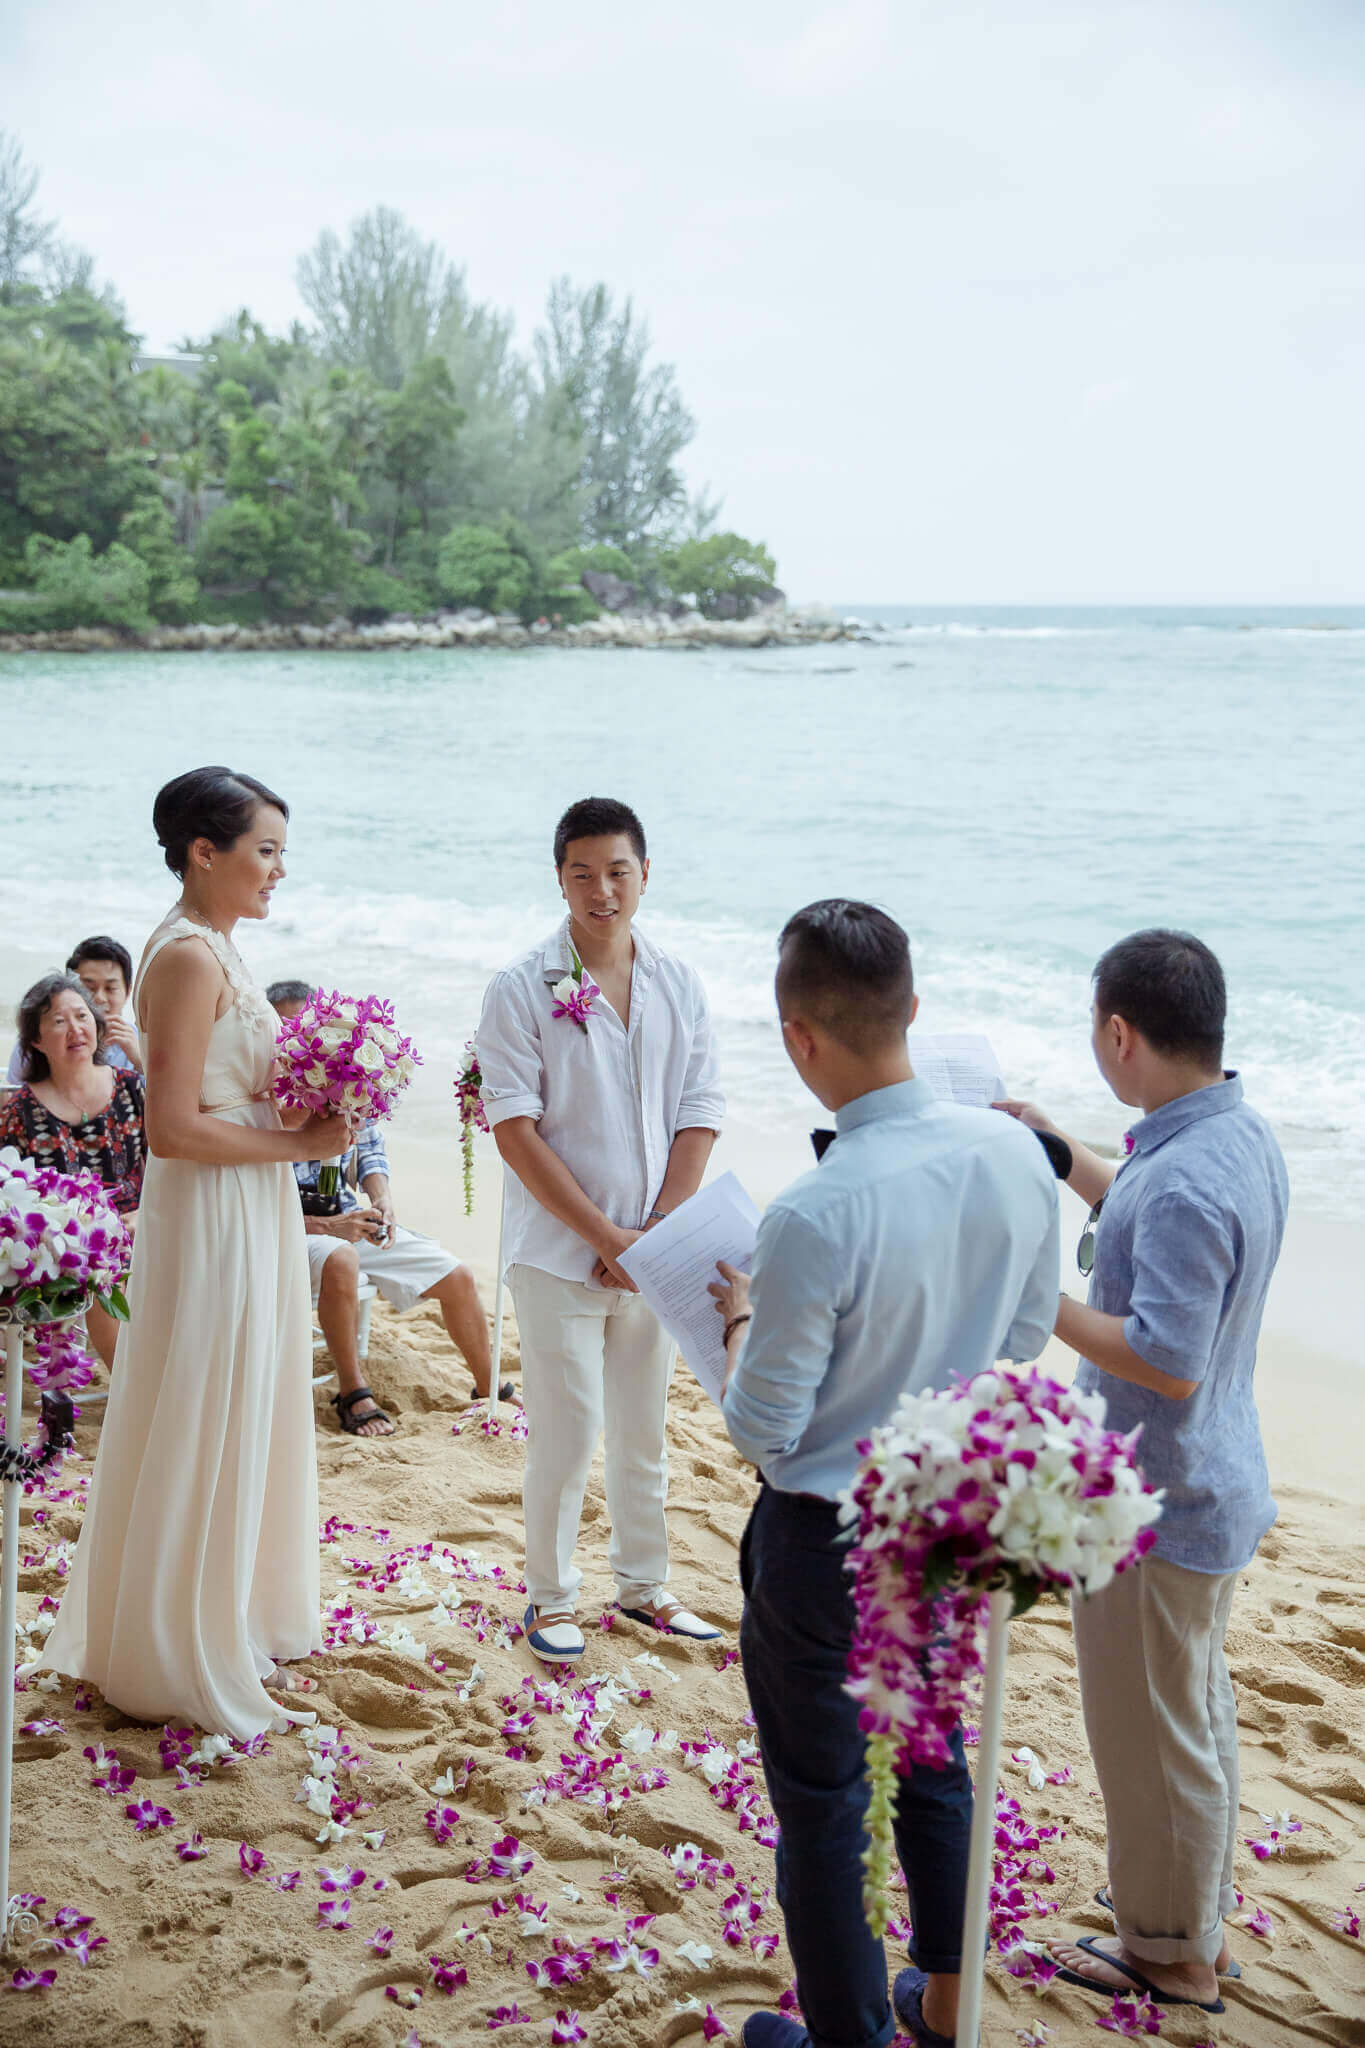 Marriage Ceremony Phuket Thailand